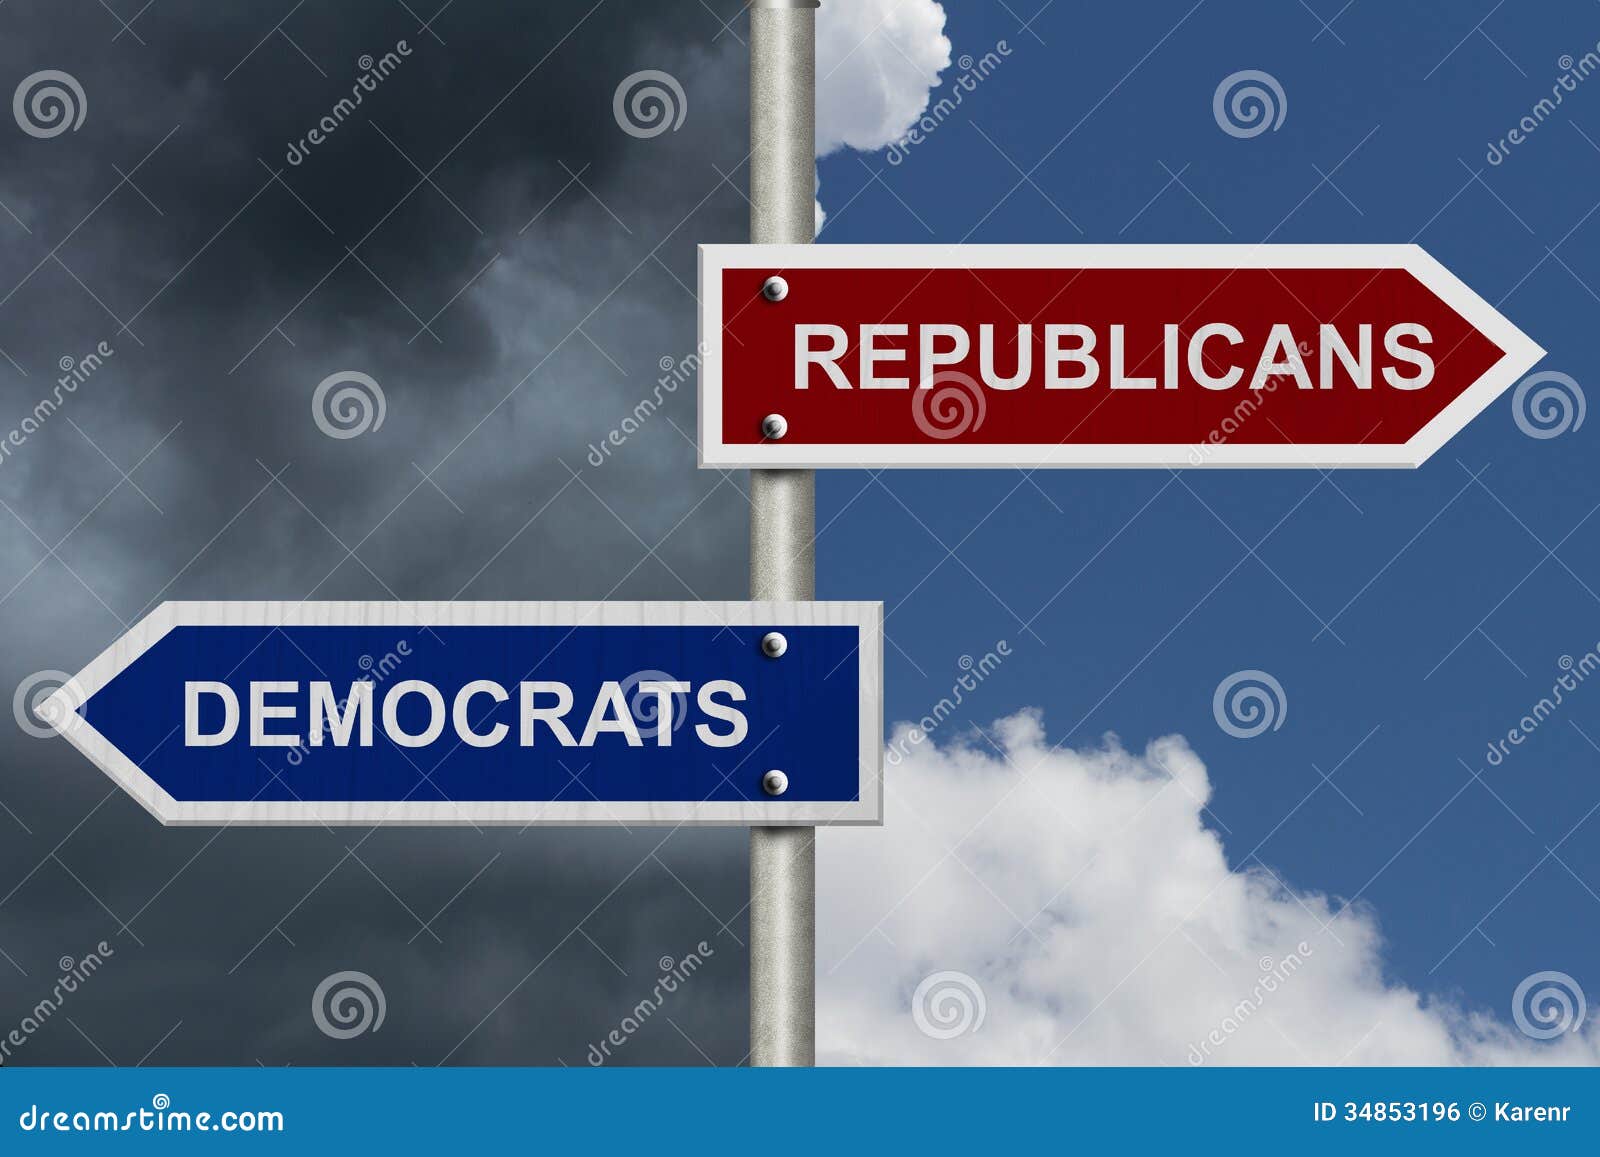 republicans versus democrats